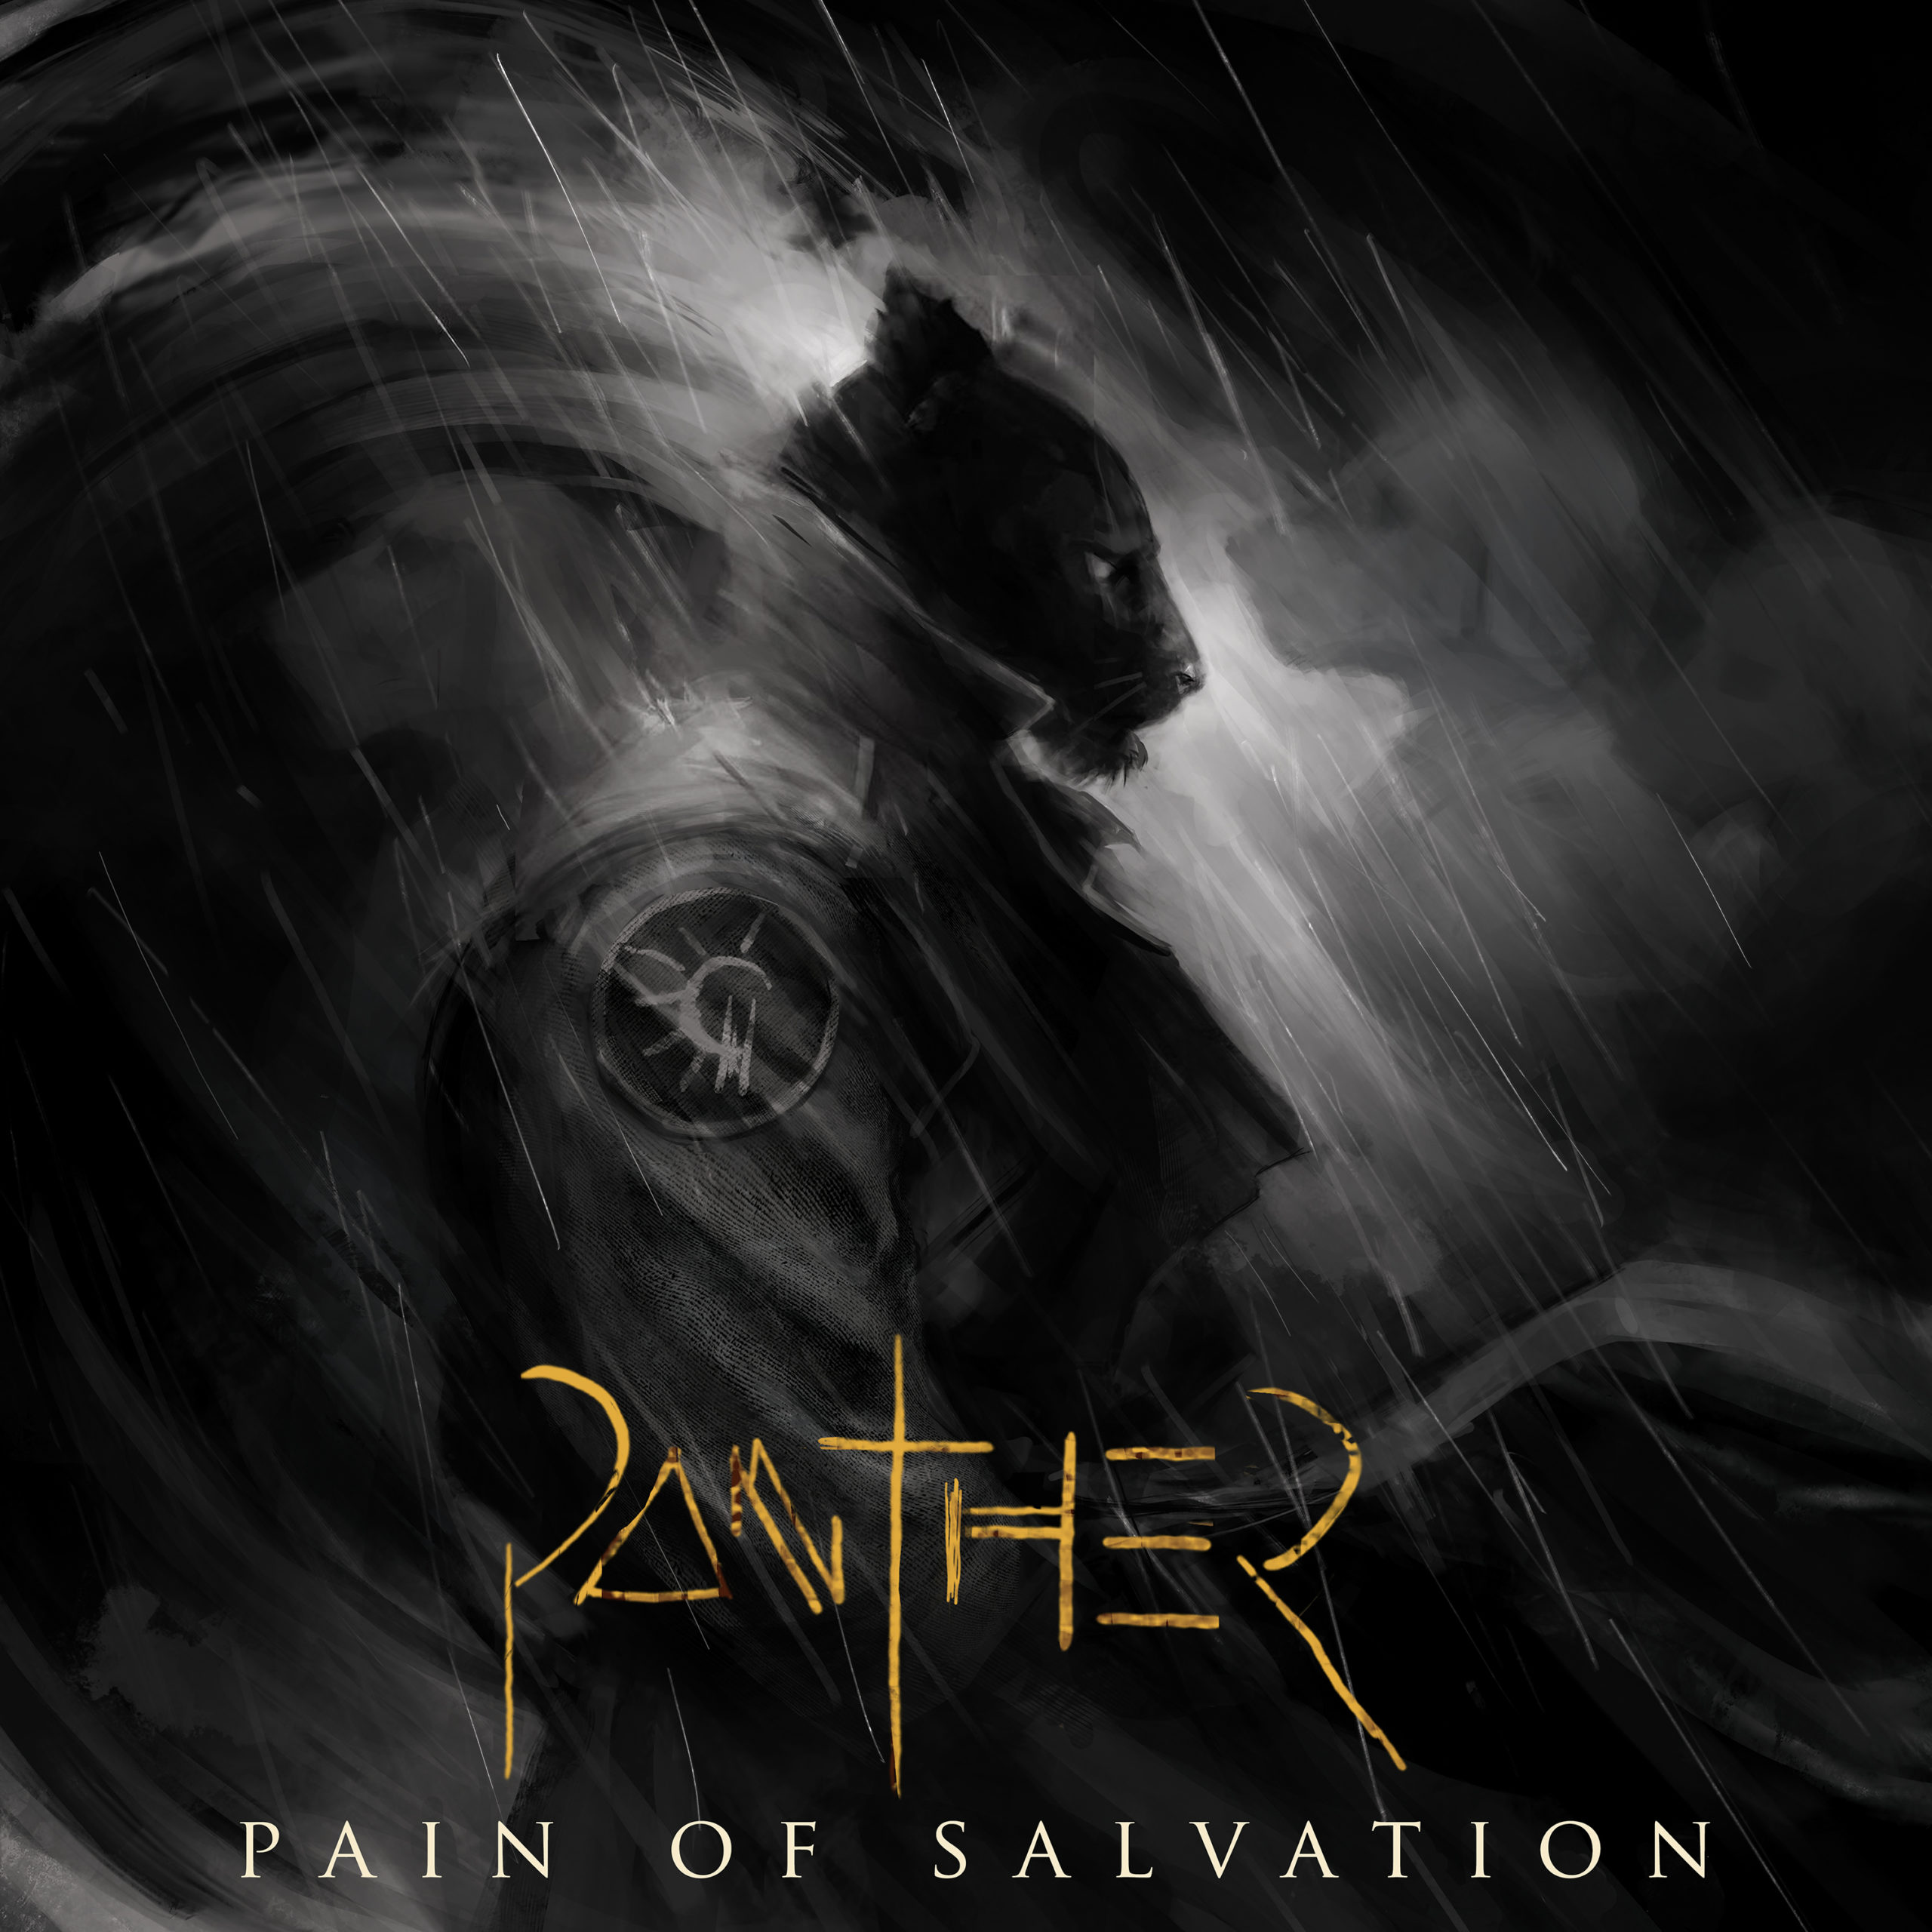 [Reseña] “Panther” el nuevo disco de Pain Of Salvation